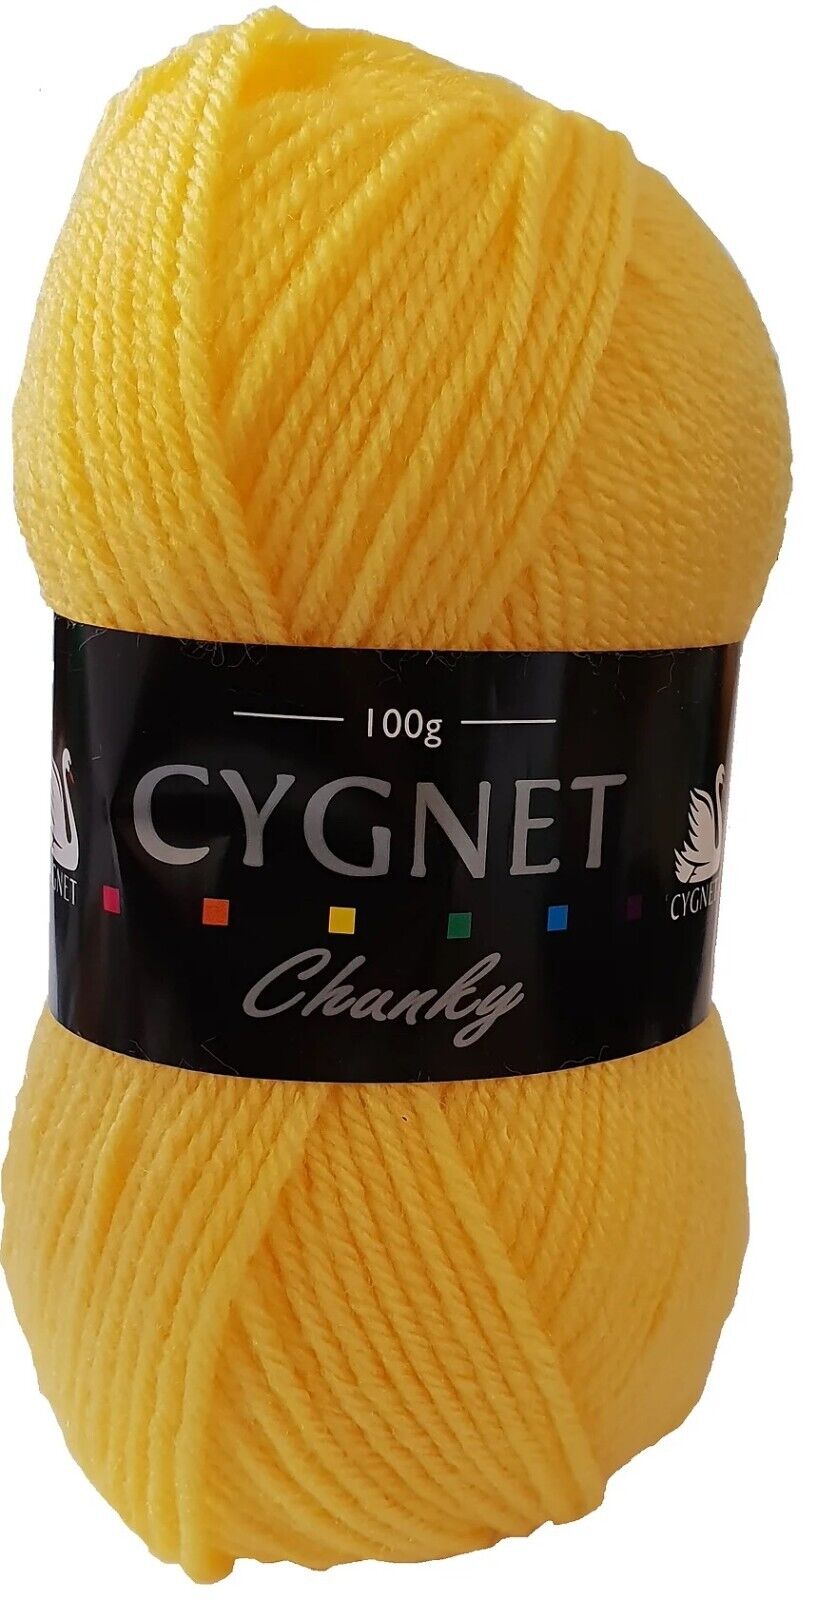 Cygnet CHUNKY Knitting Yarn / Wool - 100g Chunky Knit Ball - Citrus